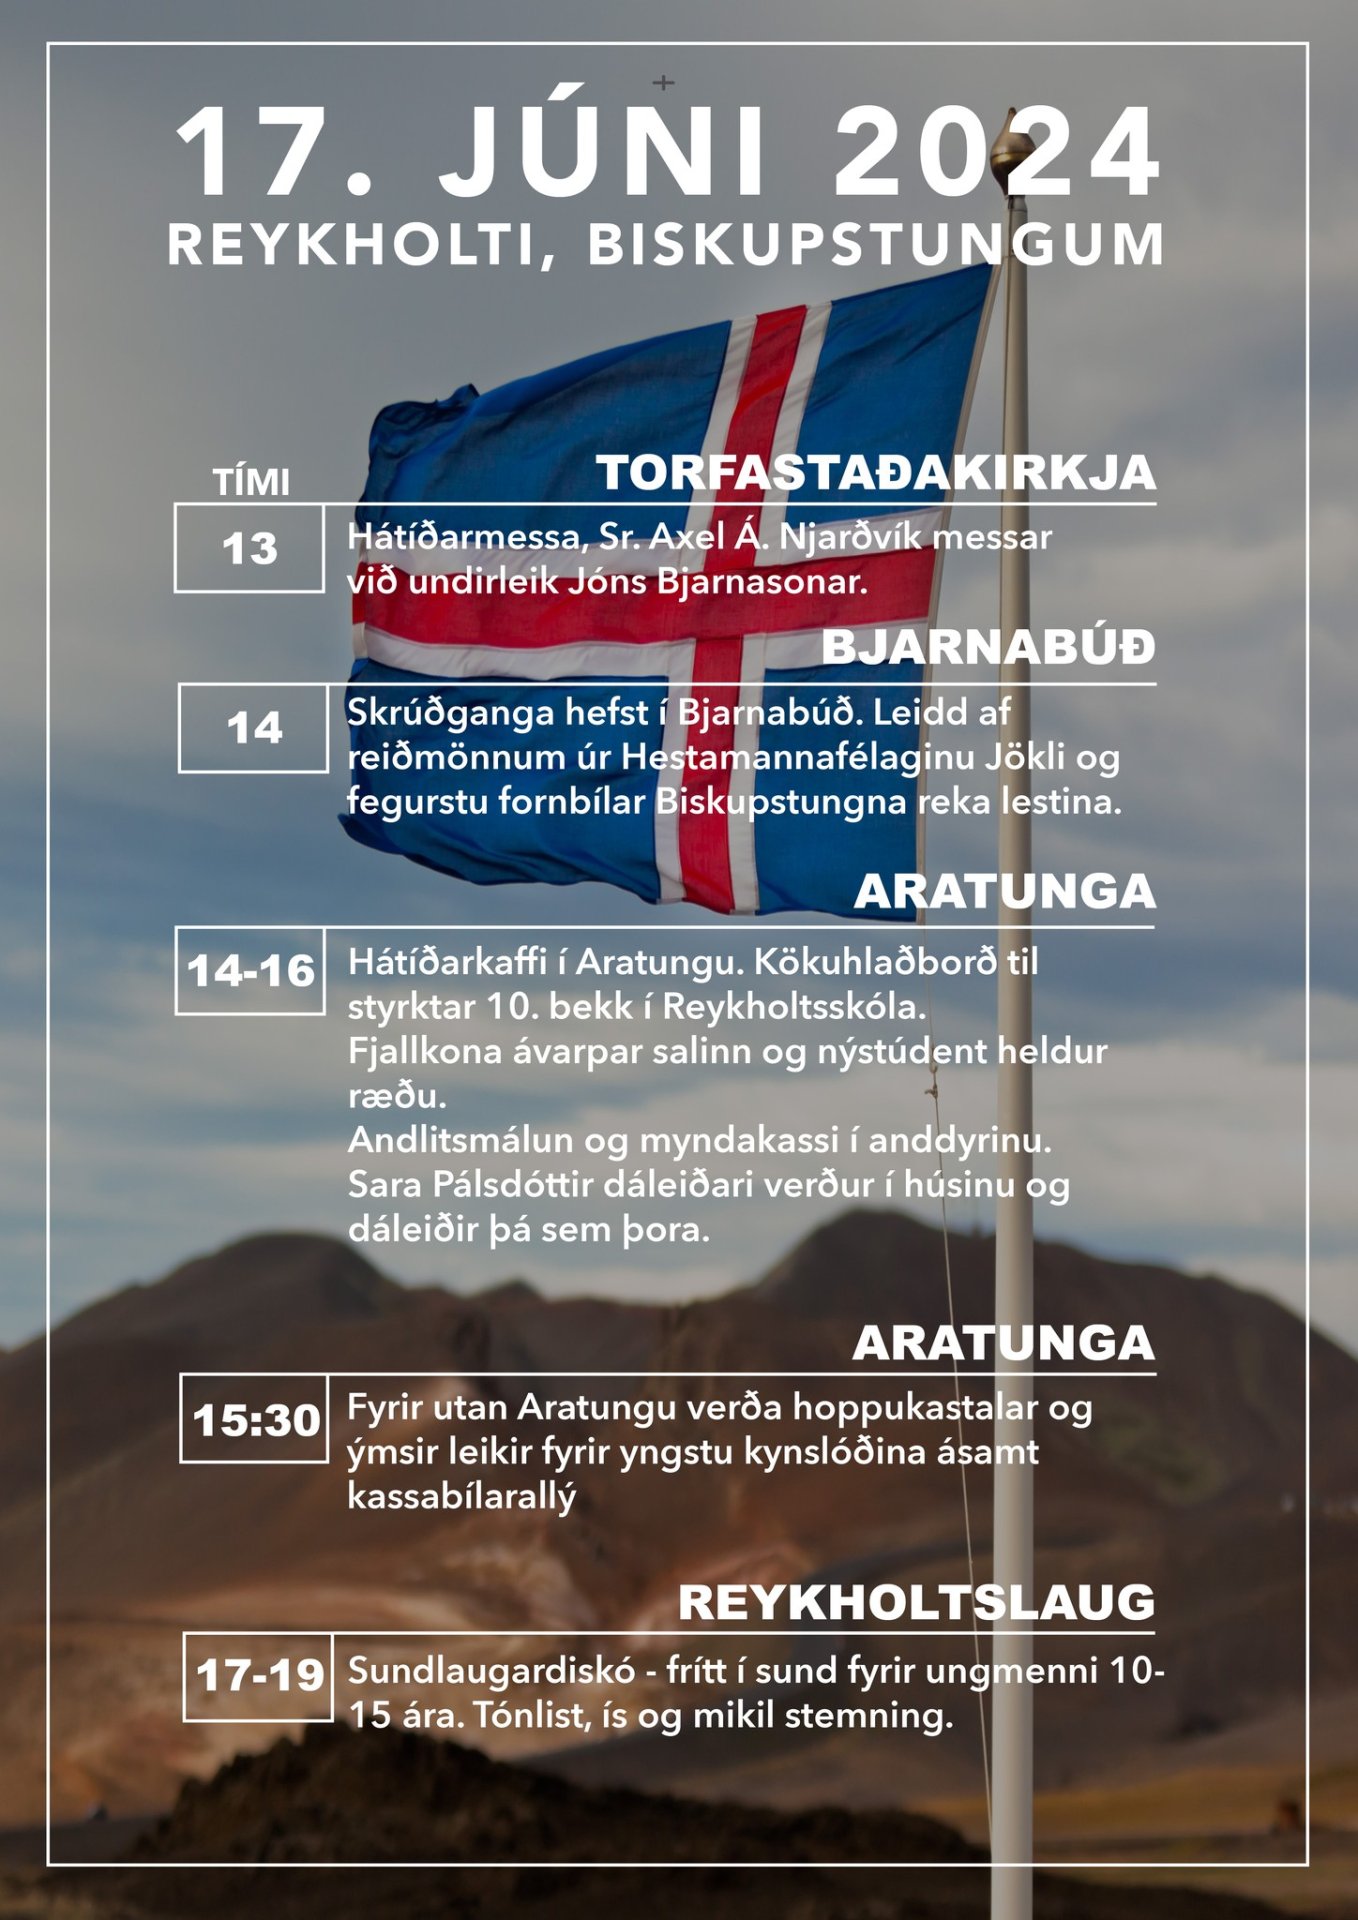 17. júní hátíðarhöld í Reykholti